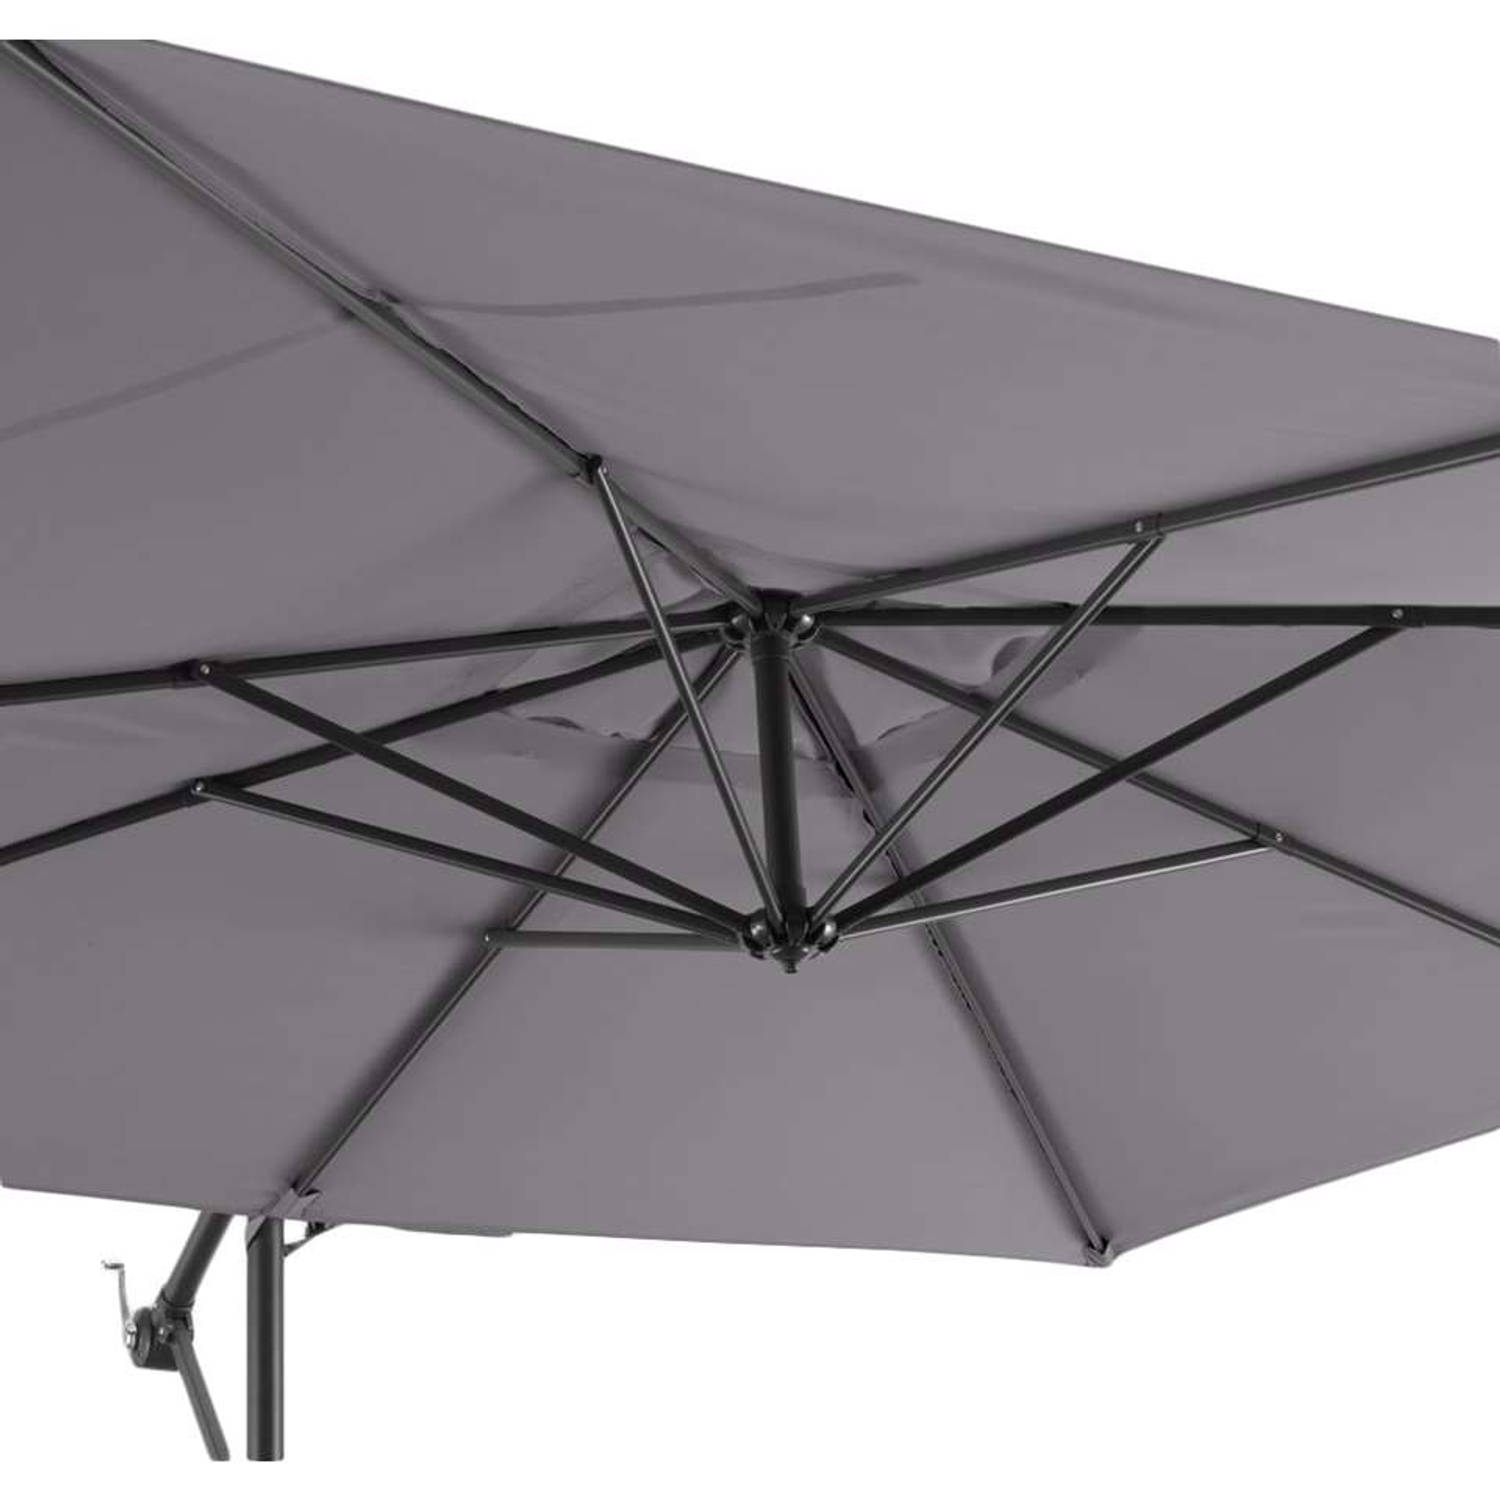 soep Prooi coupon Le Sud freepole parasol Brava - antraciet - Ø250 cm | Blokker